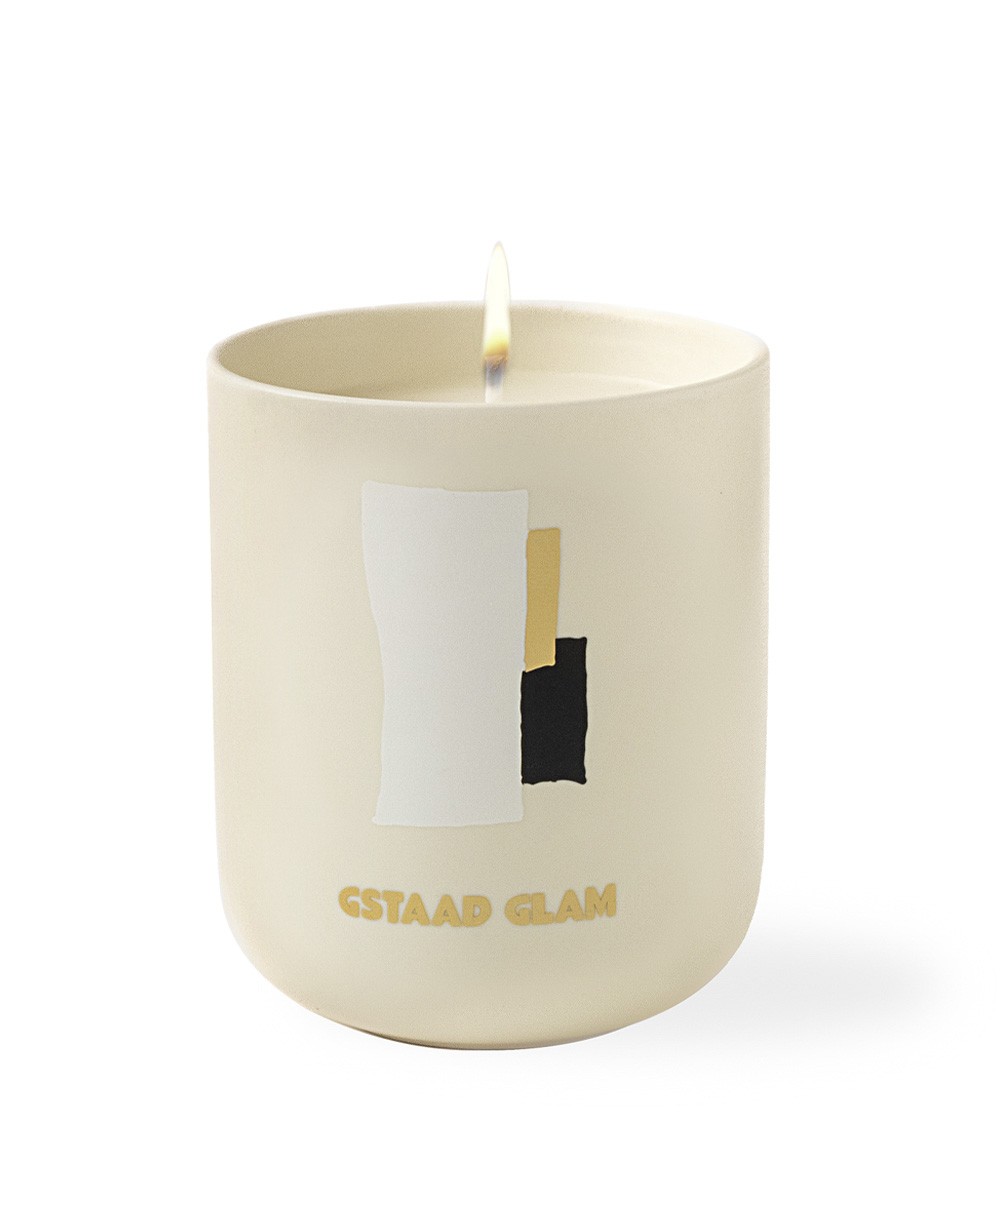 Dieses Bild zeigt das Produktbild der Travel from Home Candle Gstaad Glam von Assouline im RAUM concept store